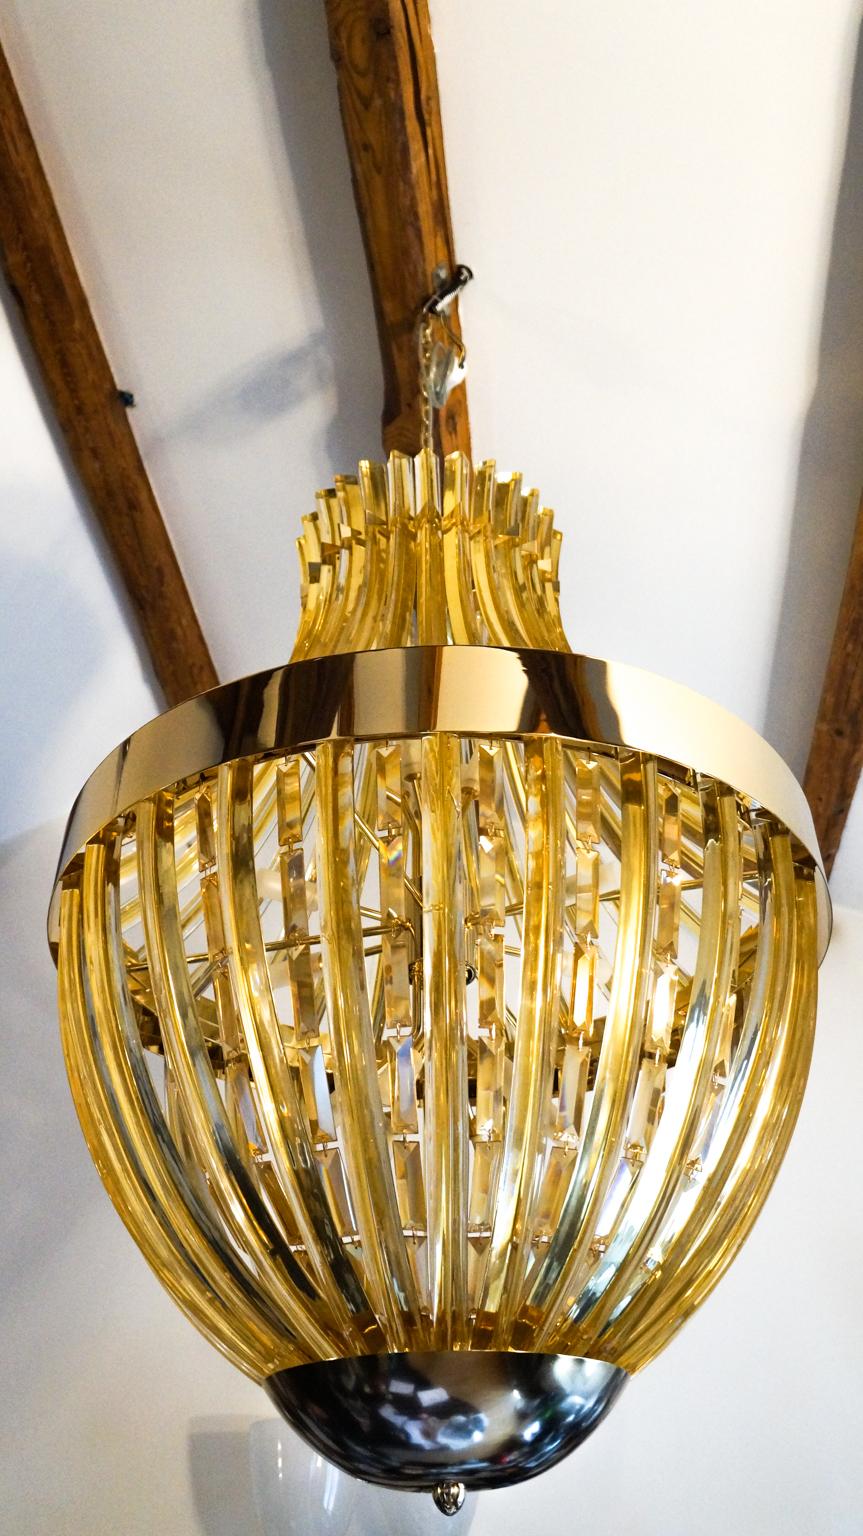 Grand lustre en verre soufflé de Murano avec 48 éléments en ambre et Swarovski. Le lustre peut être reconditionné en fonction du pays de destination. Remplacement inclus. 
Ce lustre est un projet du maître verrier de Murano, Alberto Donà, réalisé en